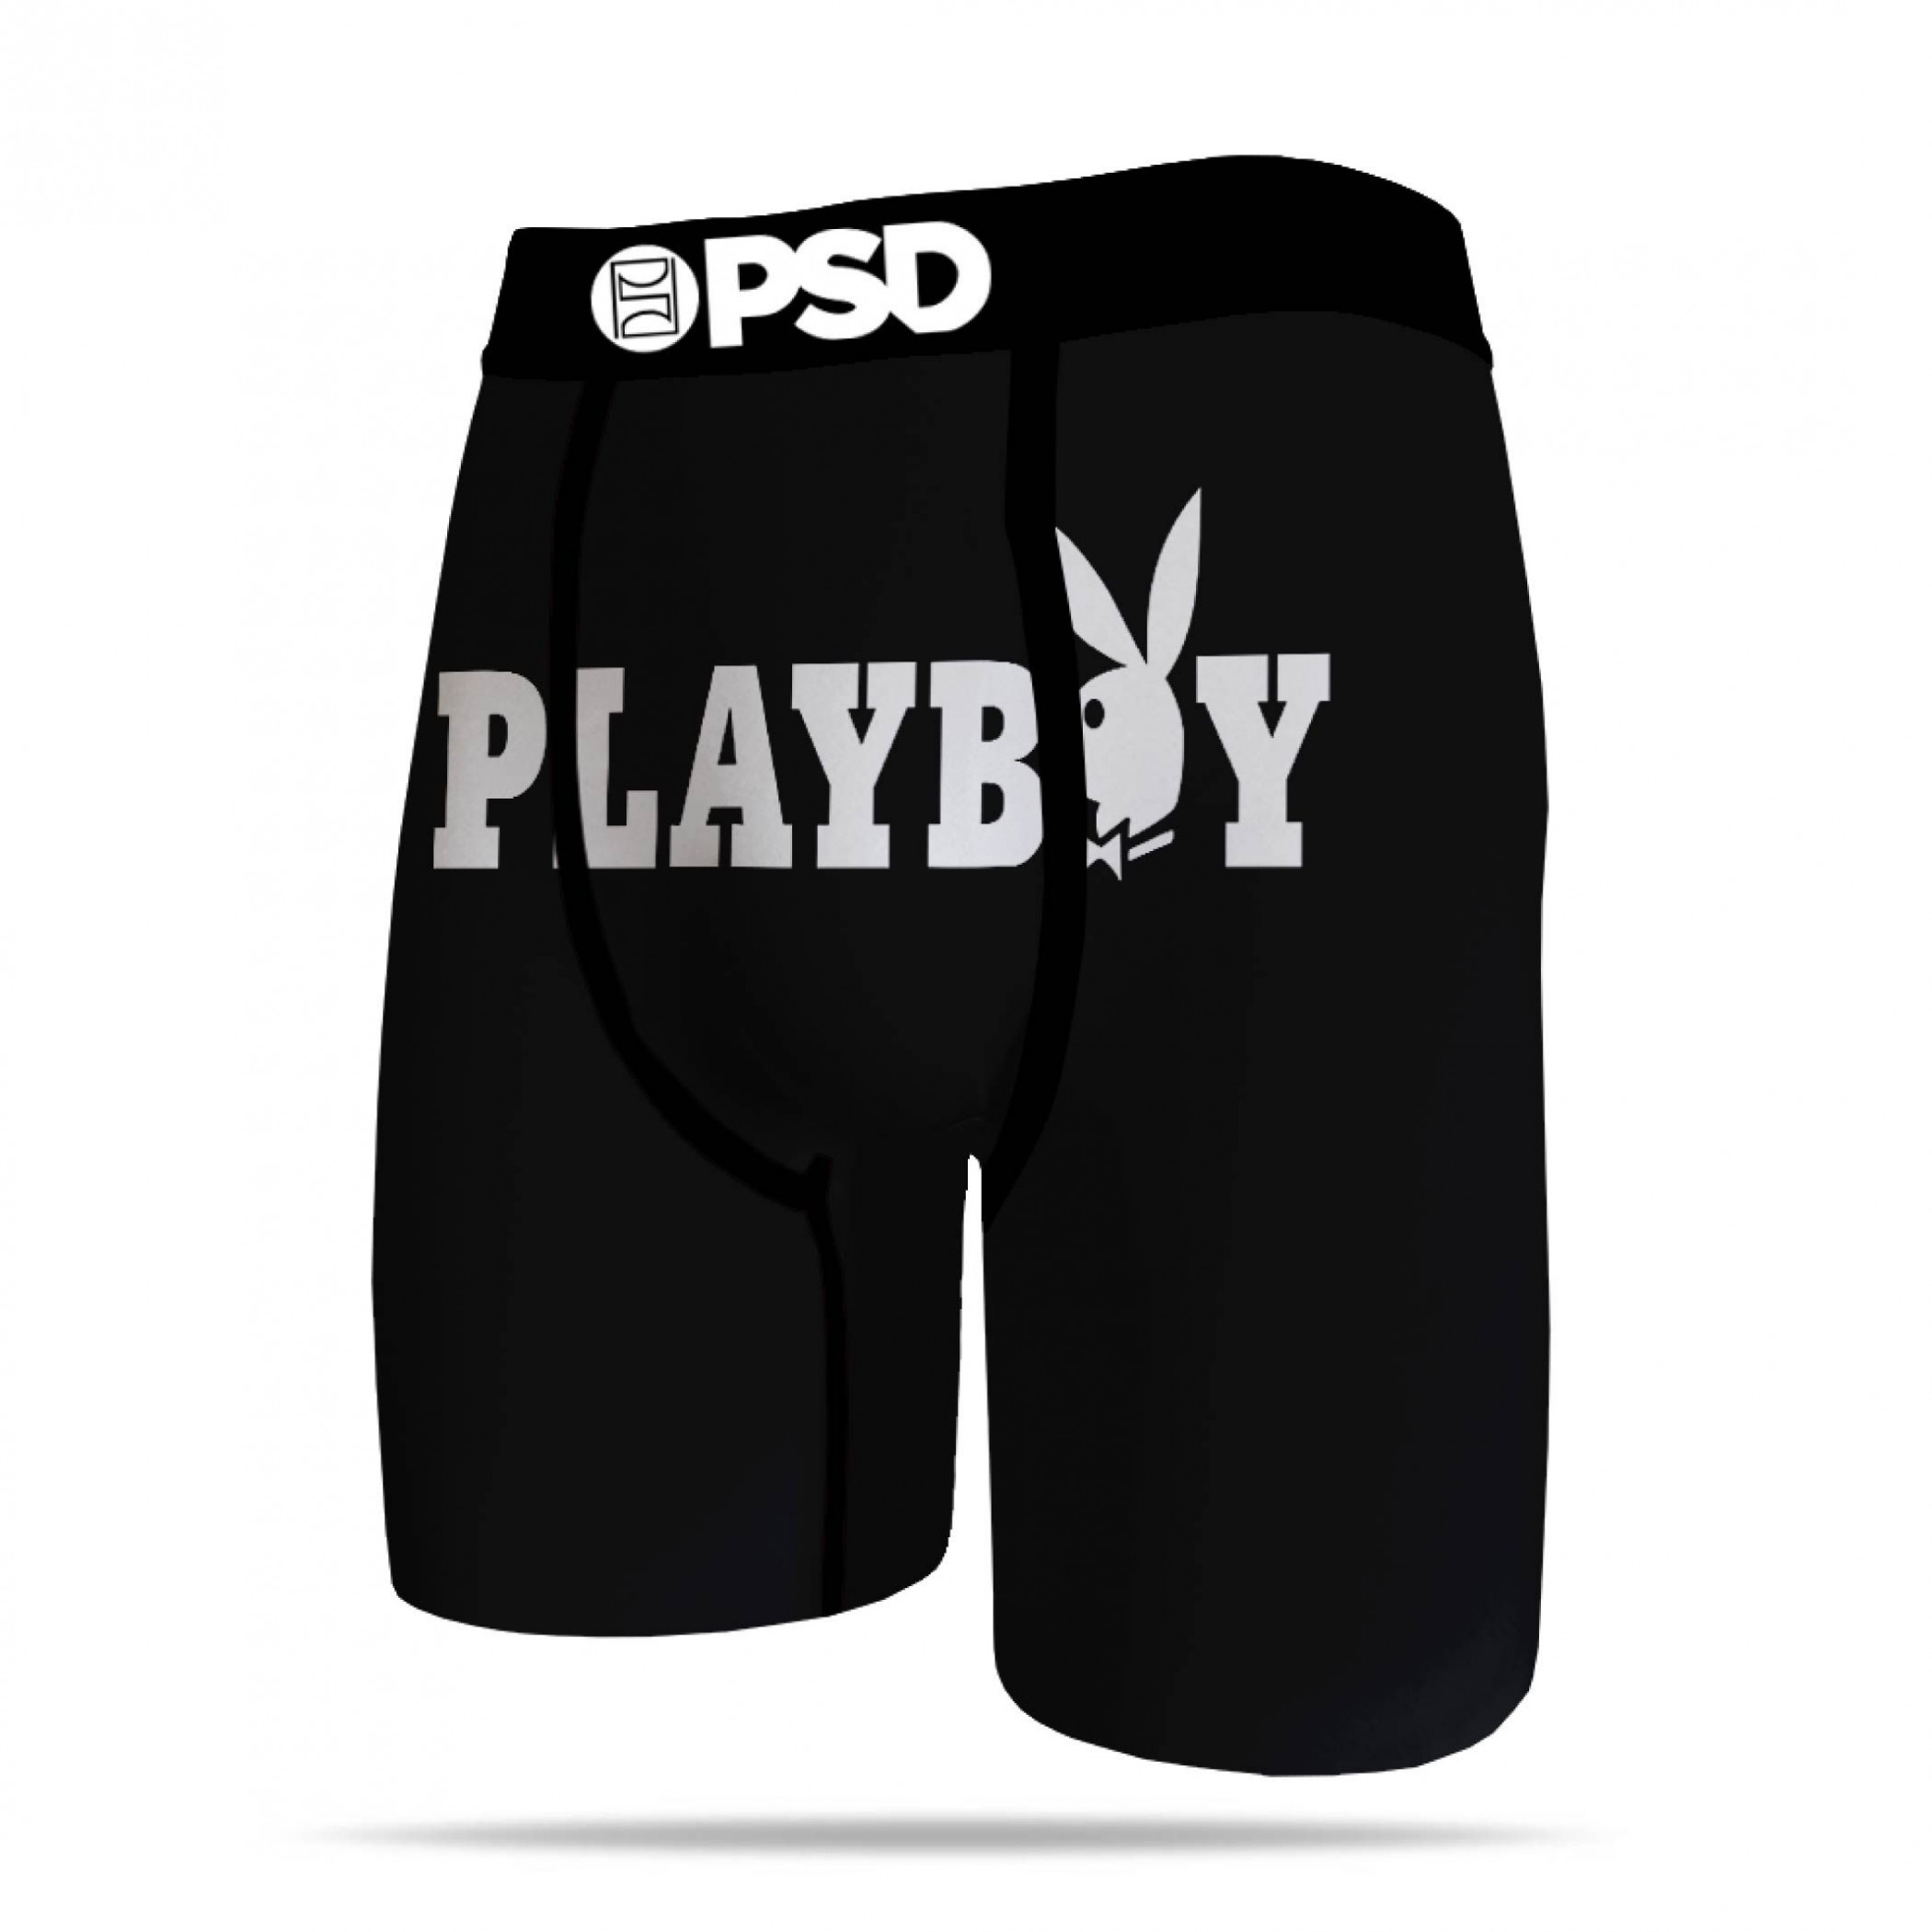 Playboy Bunny Mascot Logo Men's PSD Boxer Briefs